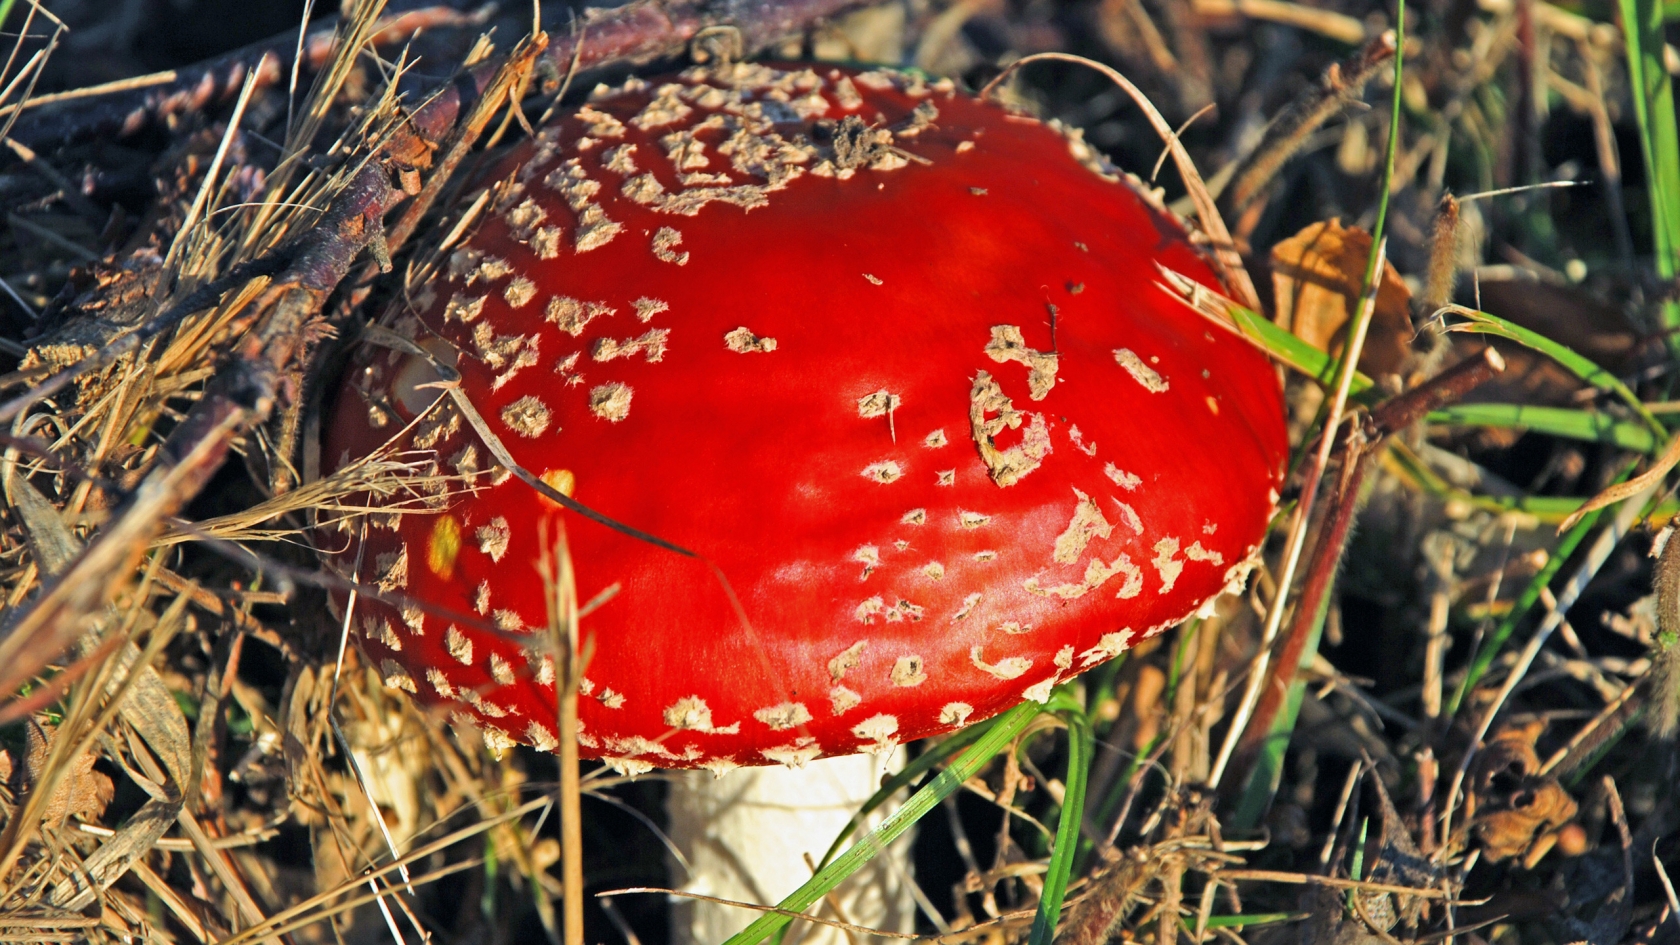 Red Mushroom for 1680 x 945 HDTV resolution